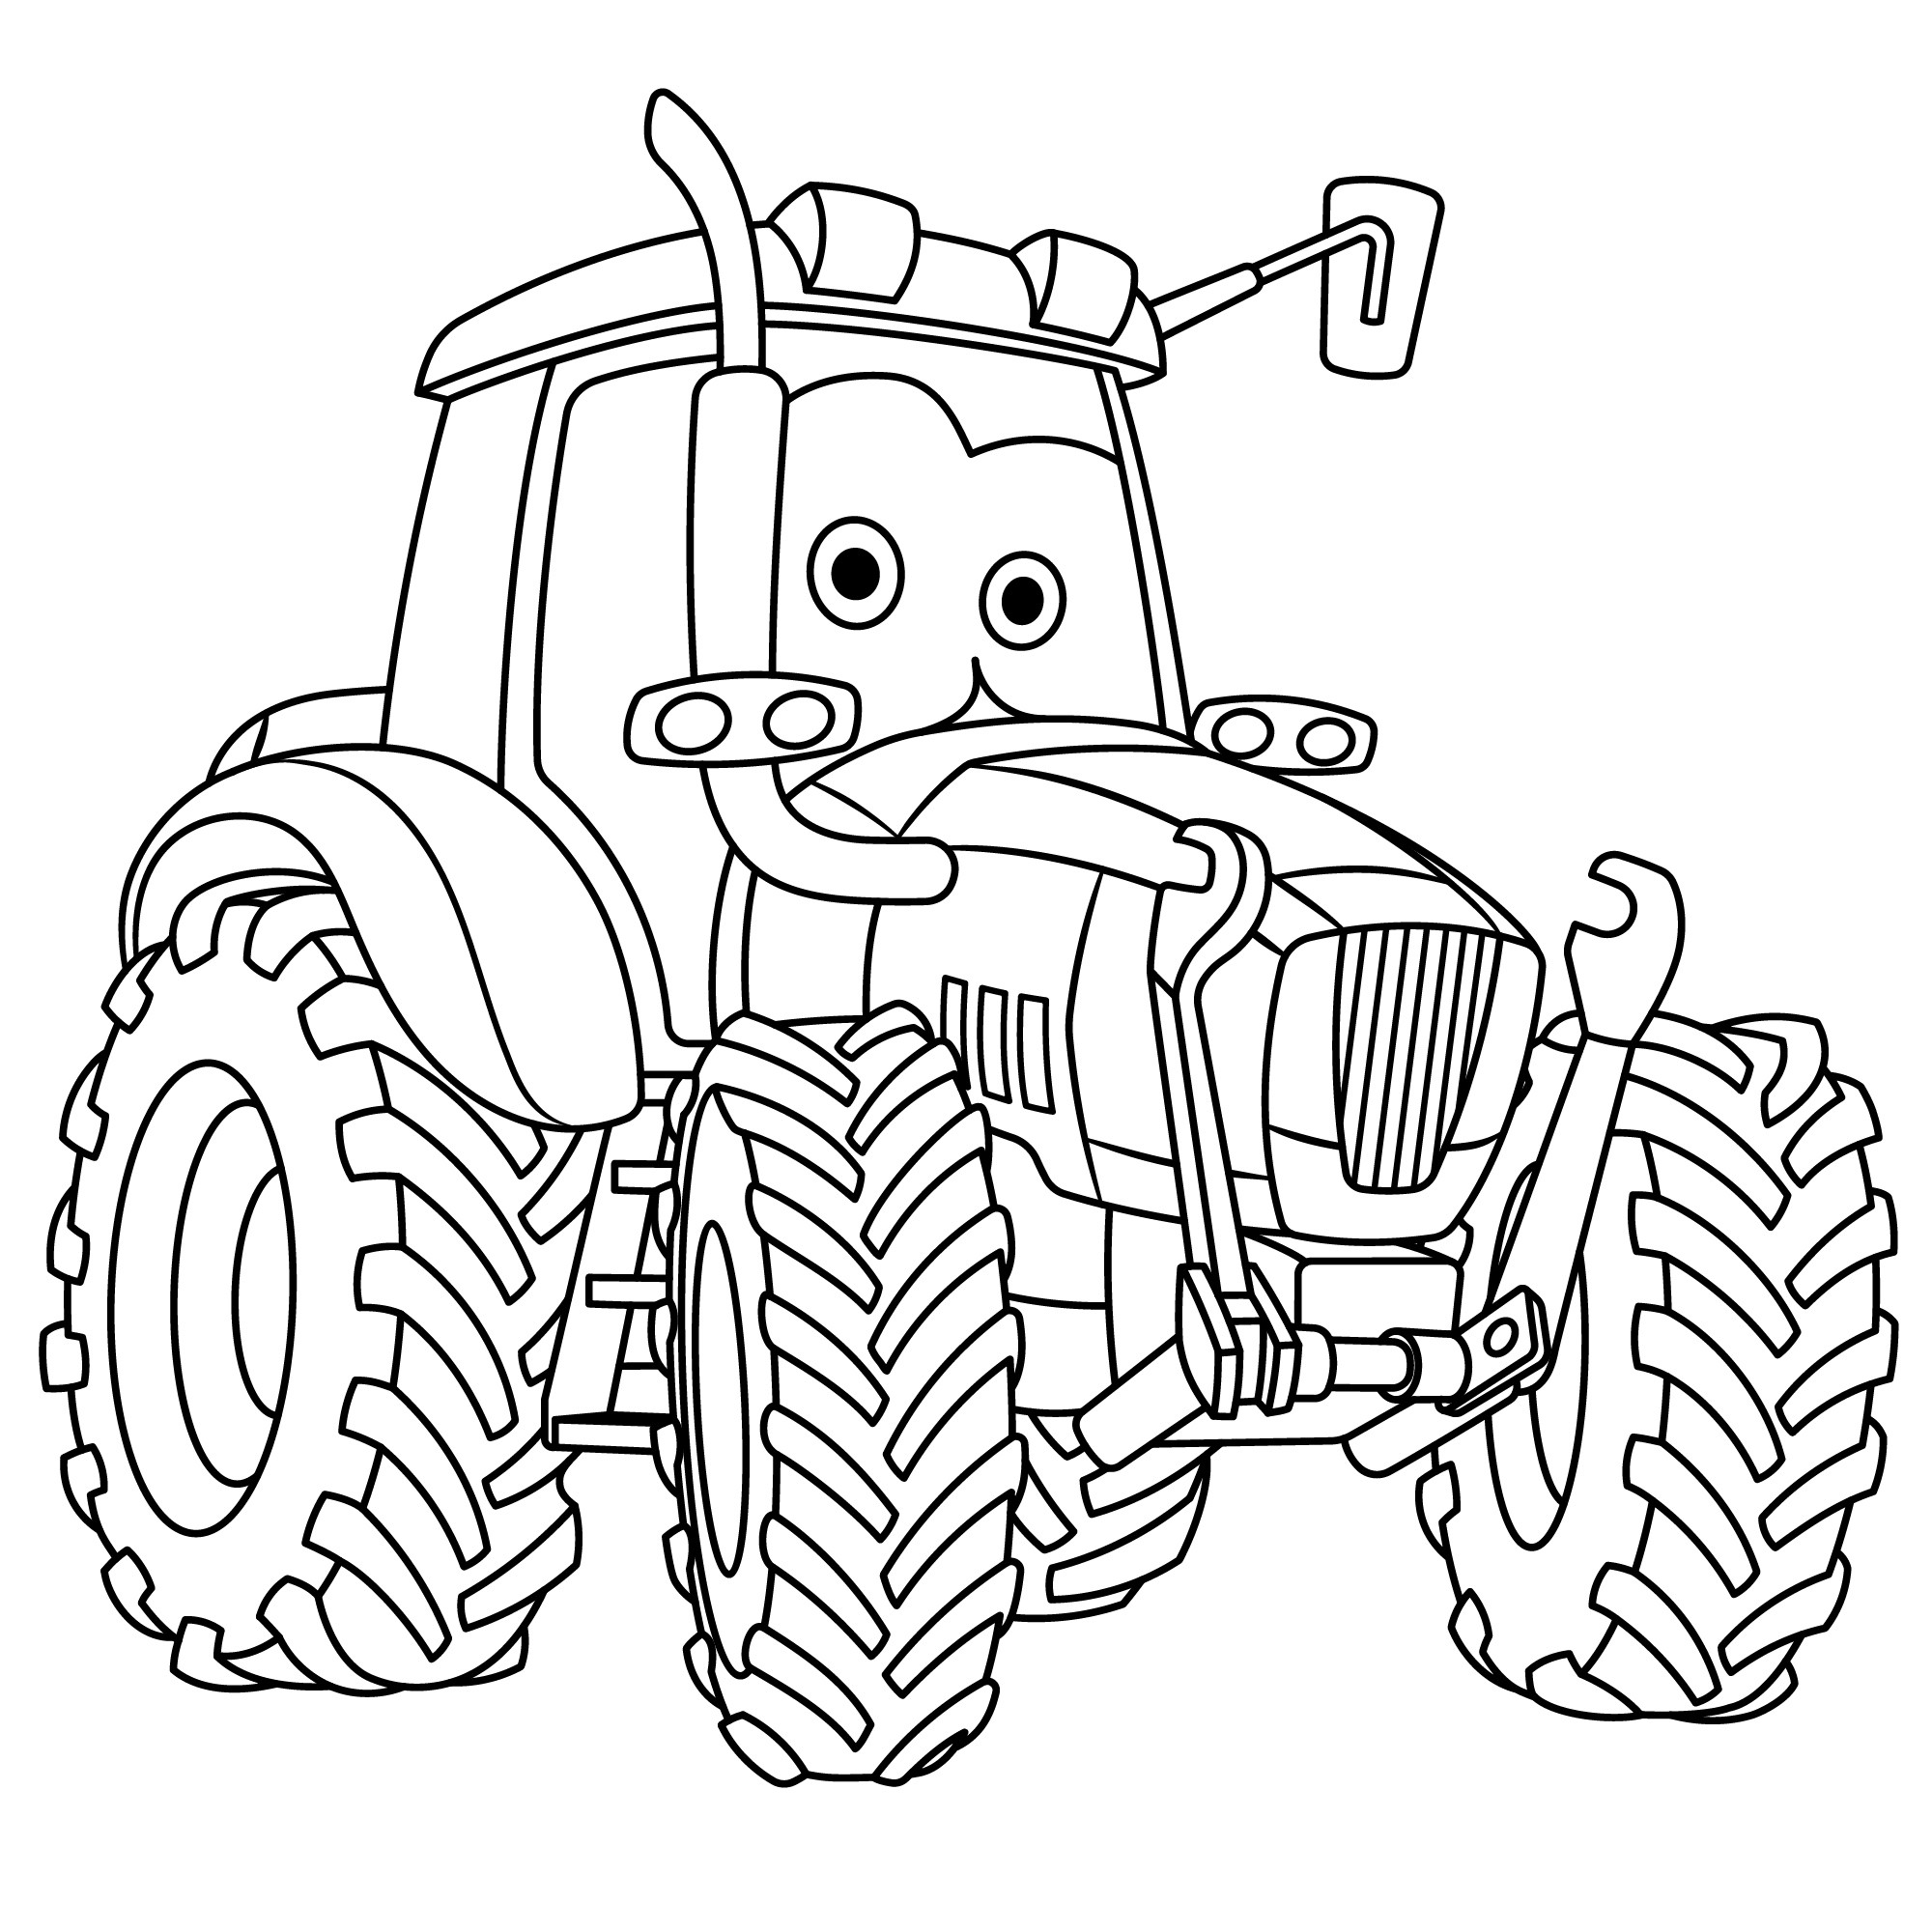 Раскраска для детей: трактор беларусь с глазами